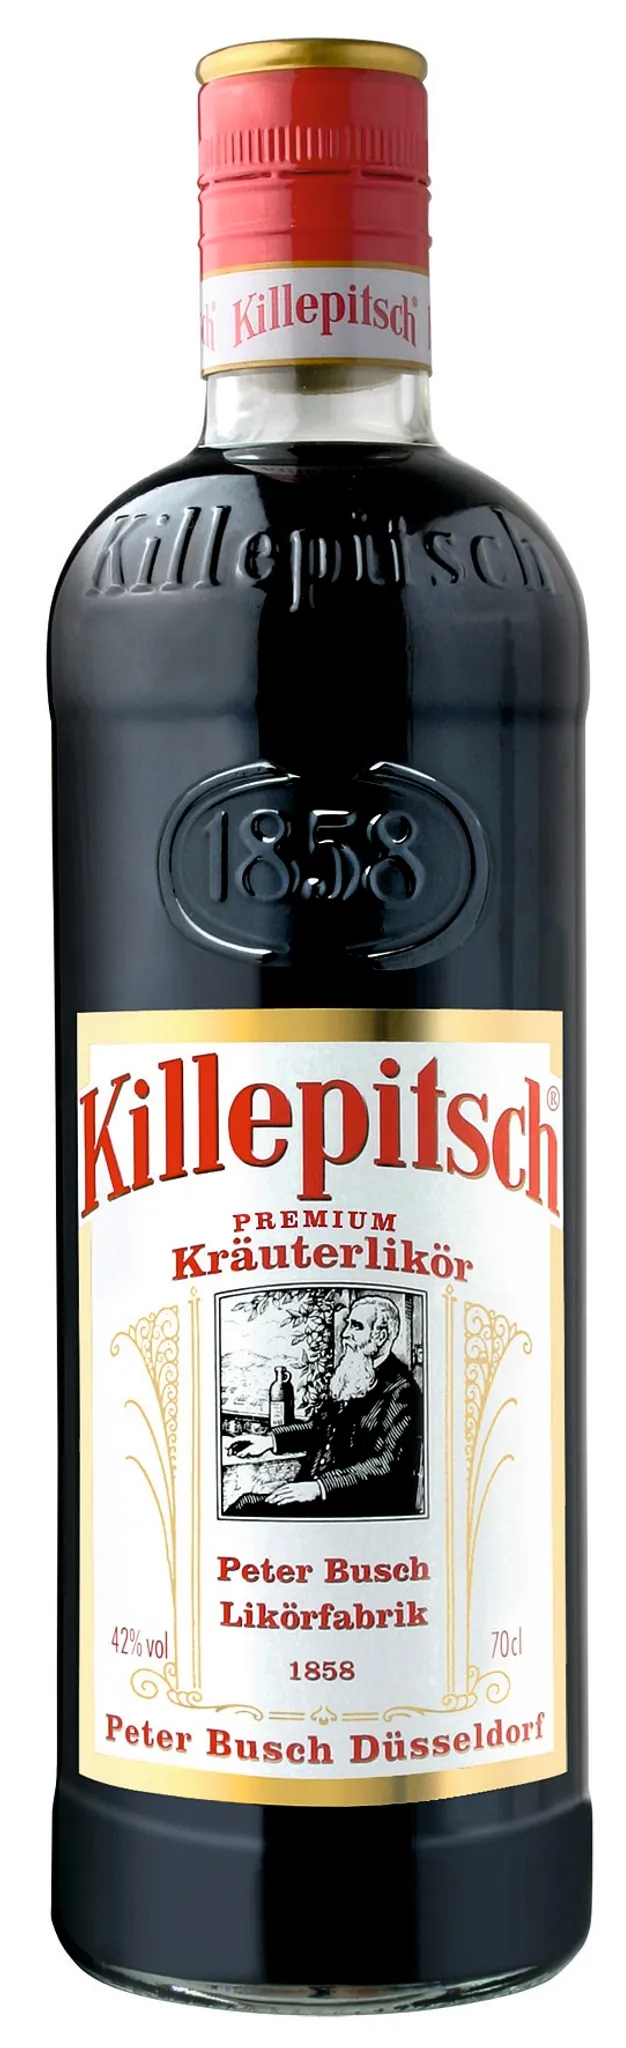 Killepitsch feiner Kräuterlikör aus Premium